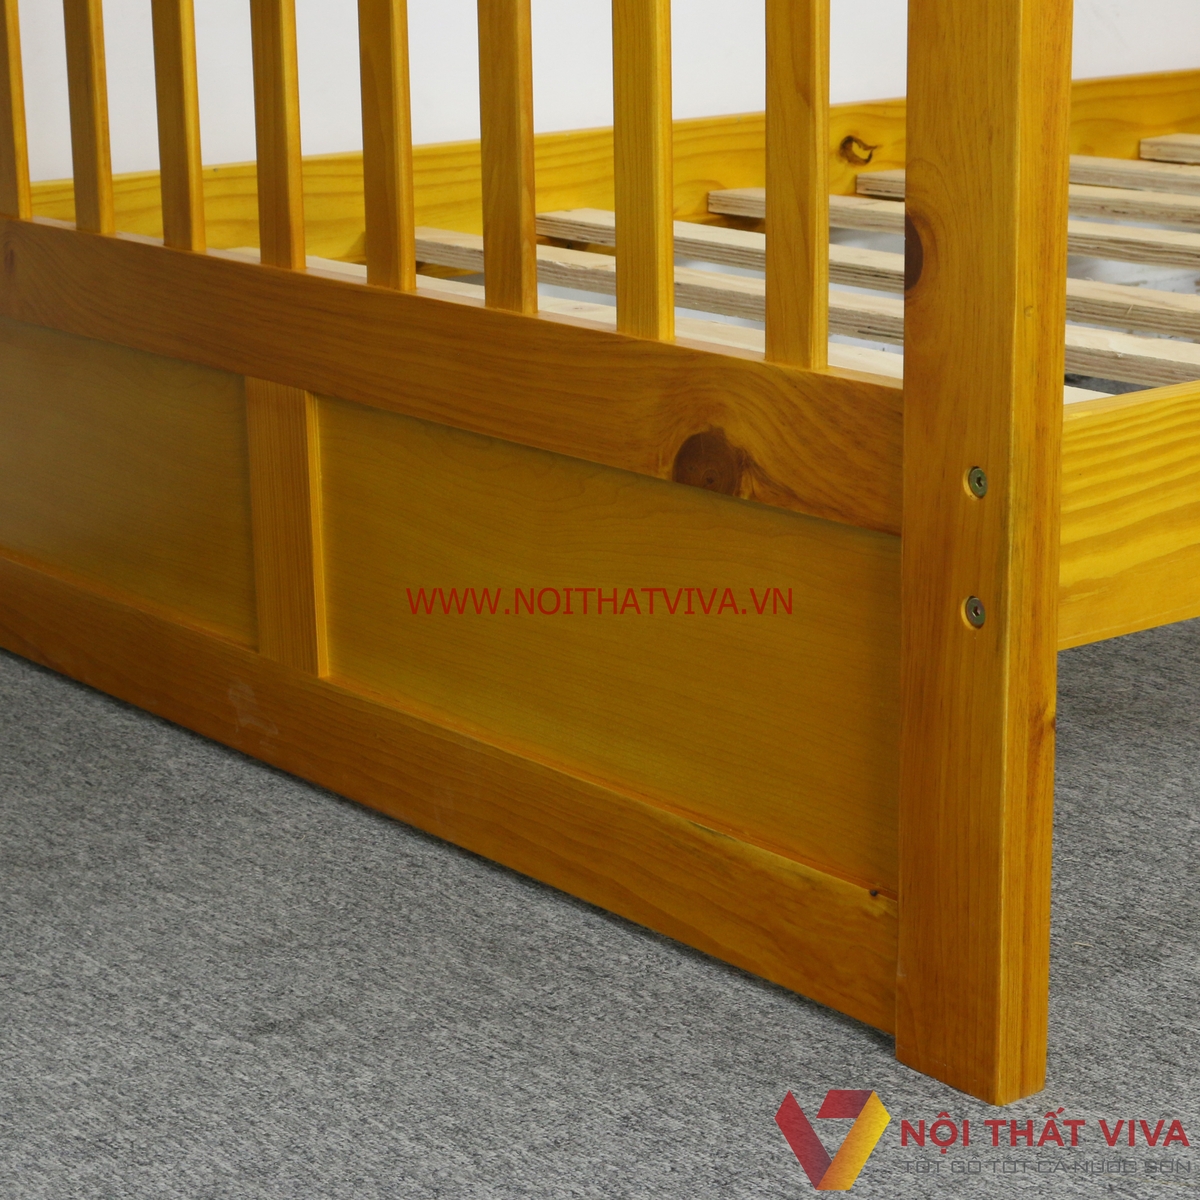 Giường tầng cho bé giá rẻ nhất TP HCM - Miễn phí vận chuyển nội thành